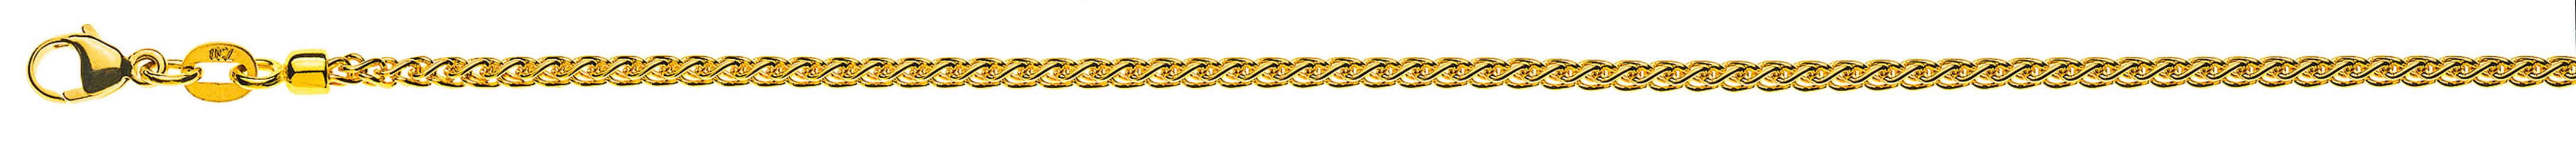 AURONOS Prestige Halskette Gelbgold 18K Zopfkette 50cm 2.15mm